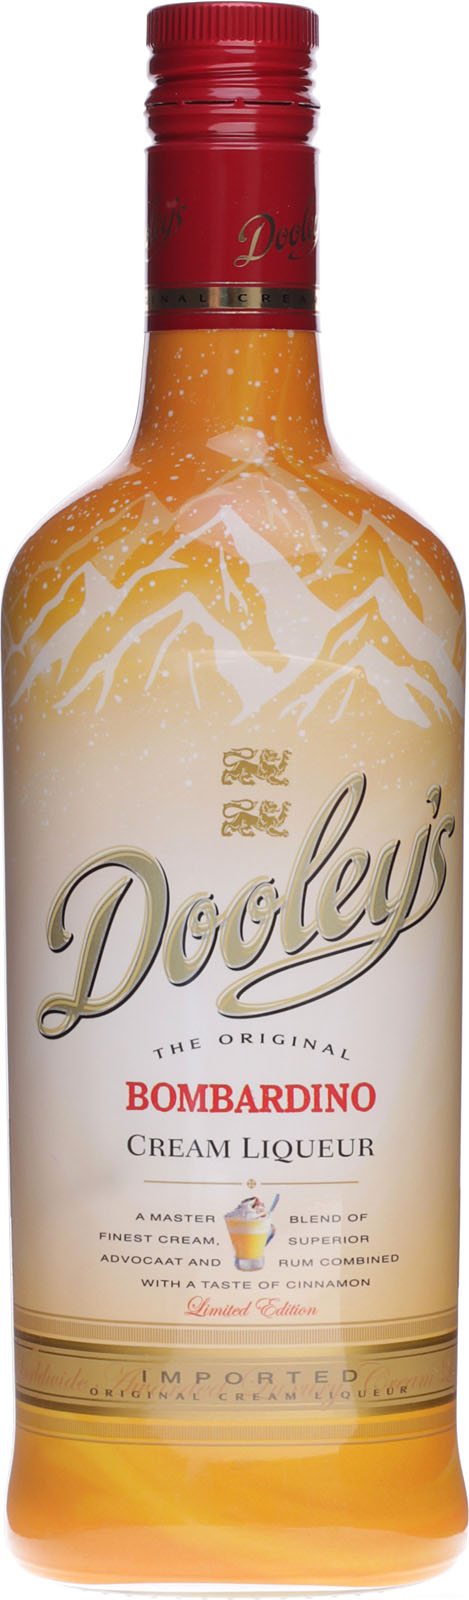 Dooleys günstig Cream und Liqueur Bombardino schnell be